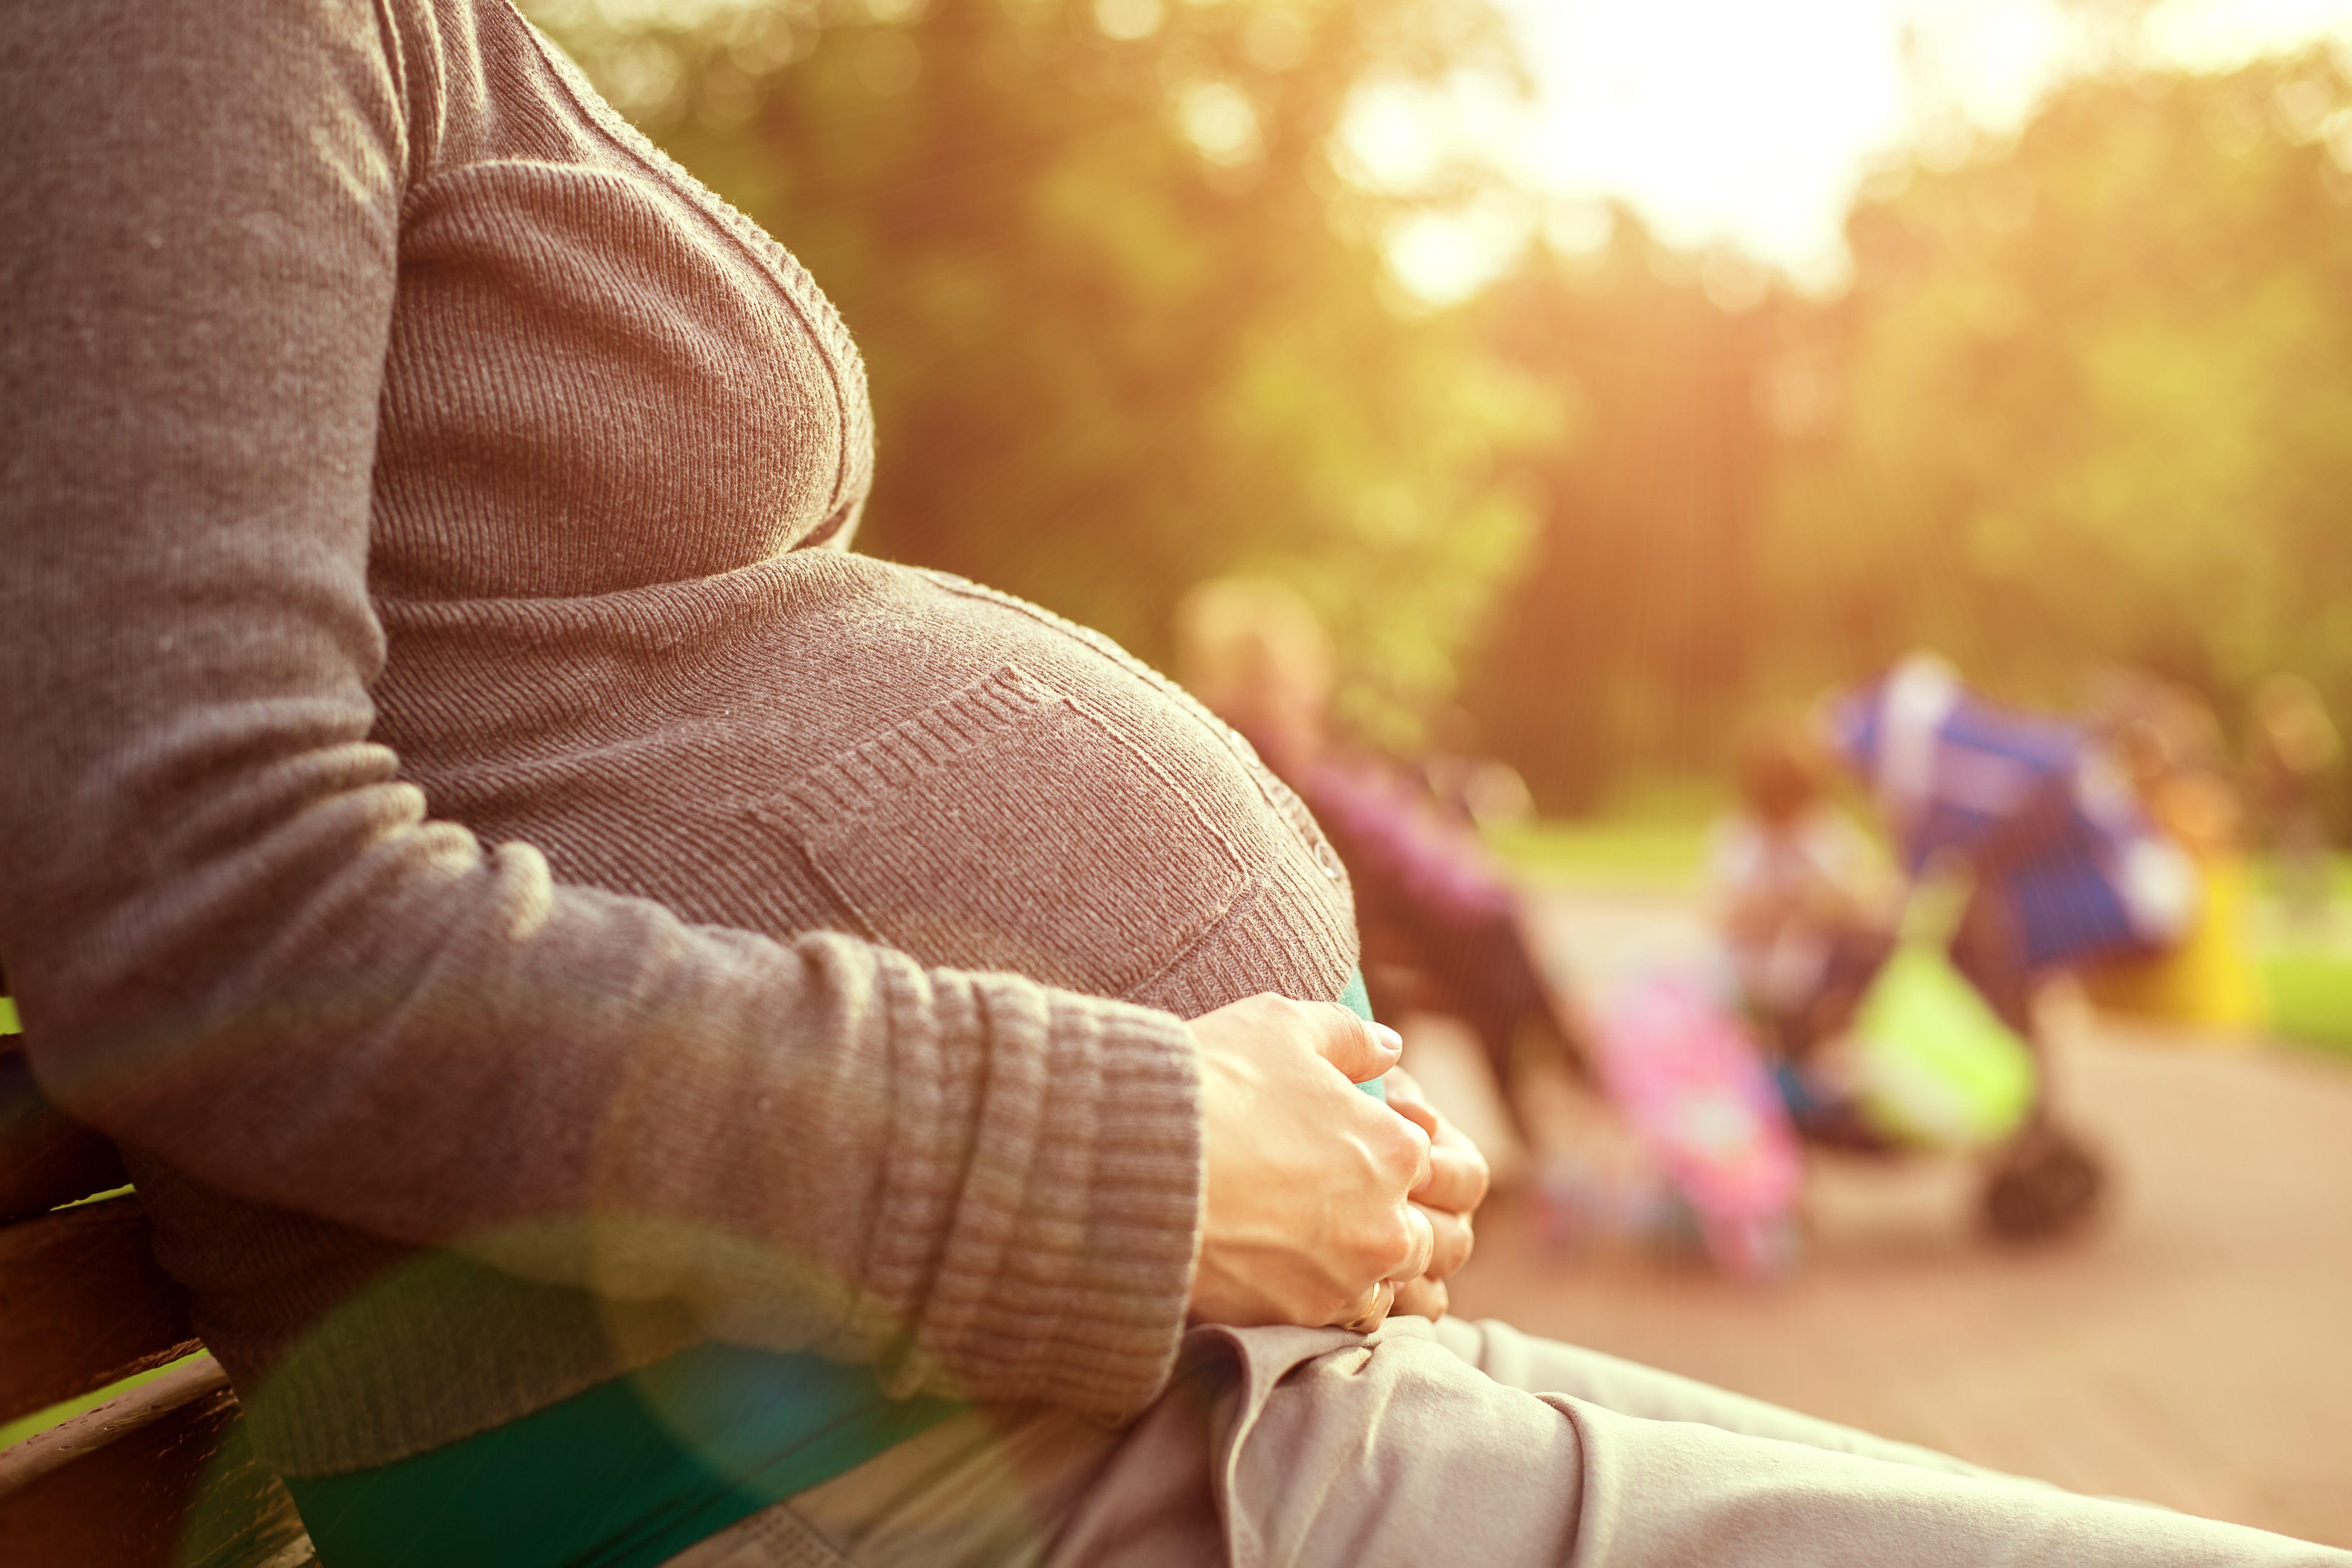 Mujer embarazada sentada en banca | Fuente: Shutterstock